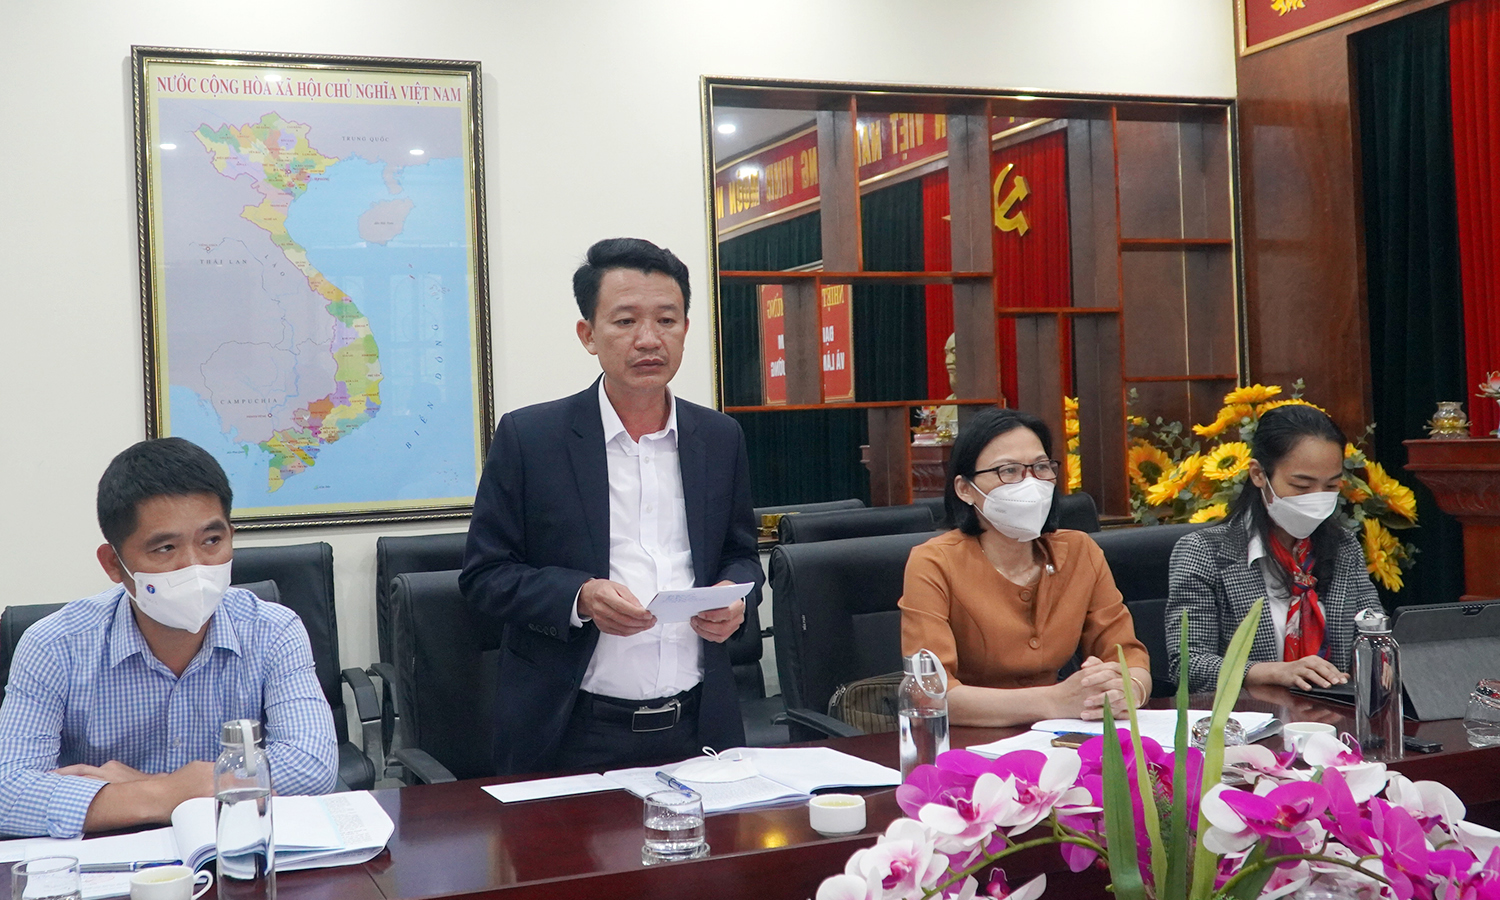  ĐBQH Trần Quang Minh phát biểu kết luận buổi giám sát